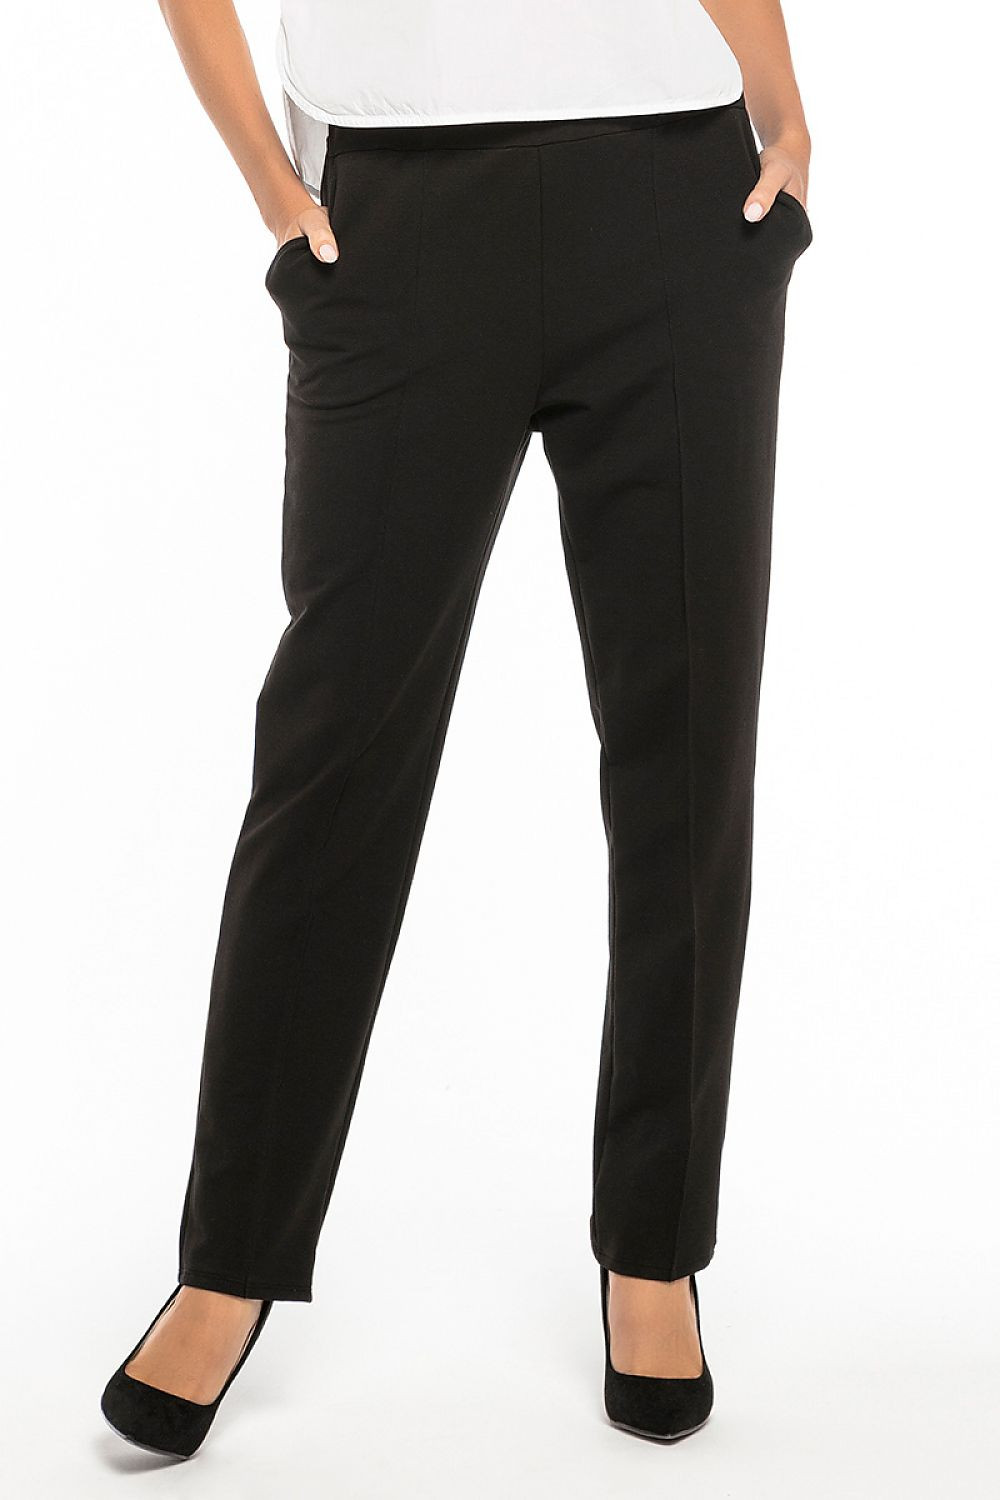 Dámské kalhoty T257/1 černá - Tessita černá 42/XL